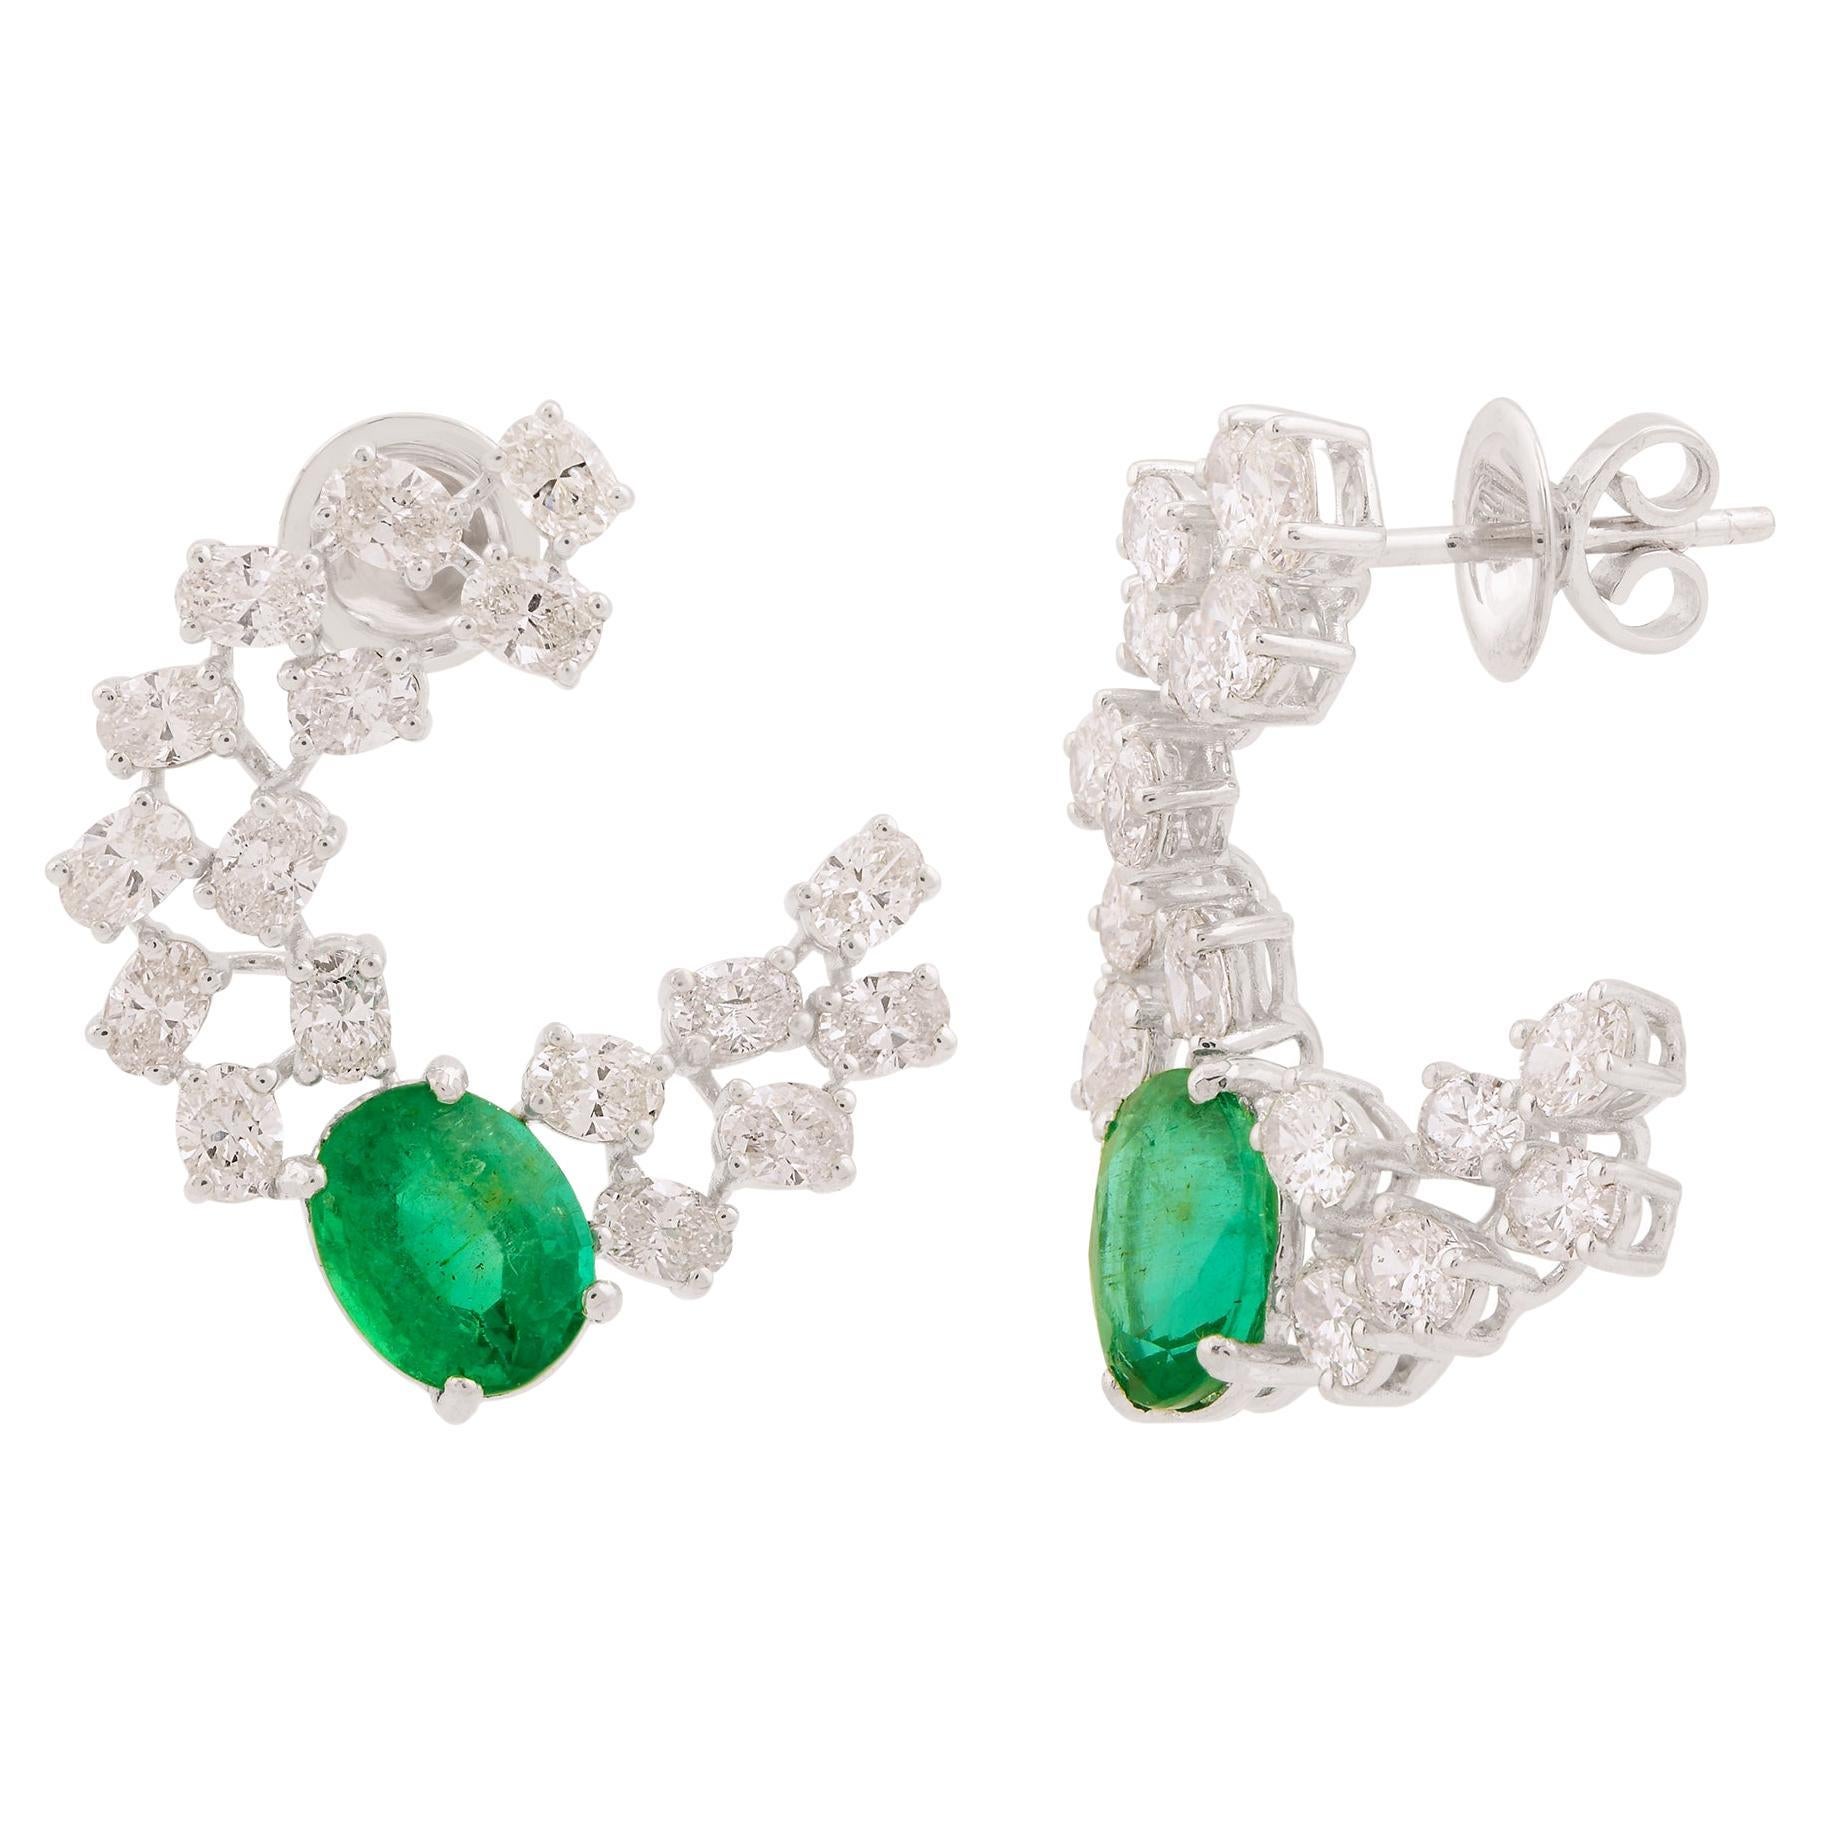 Zambian Oval Emerald Gemstone Stud Earrings Diamond Solid 14k White Gold Jewelry For Sale